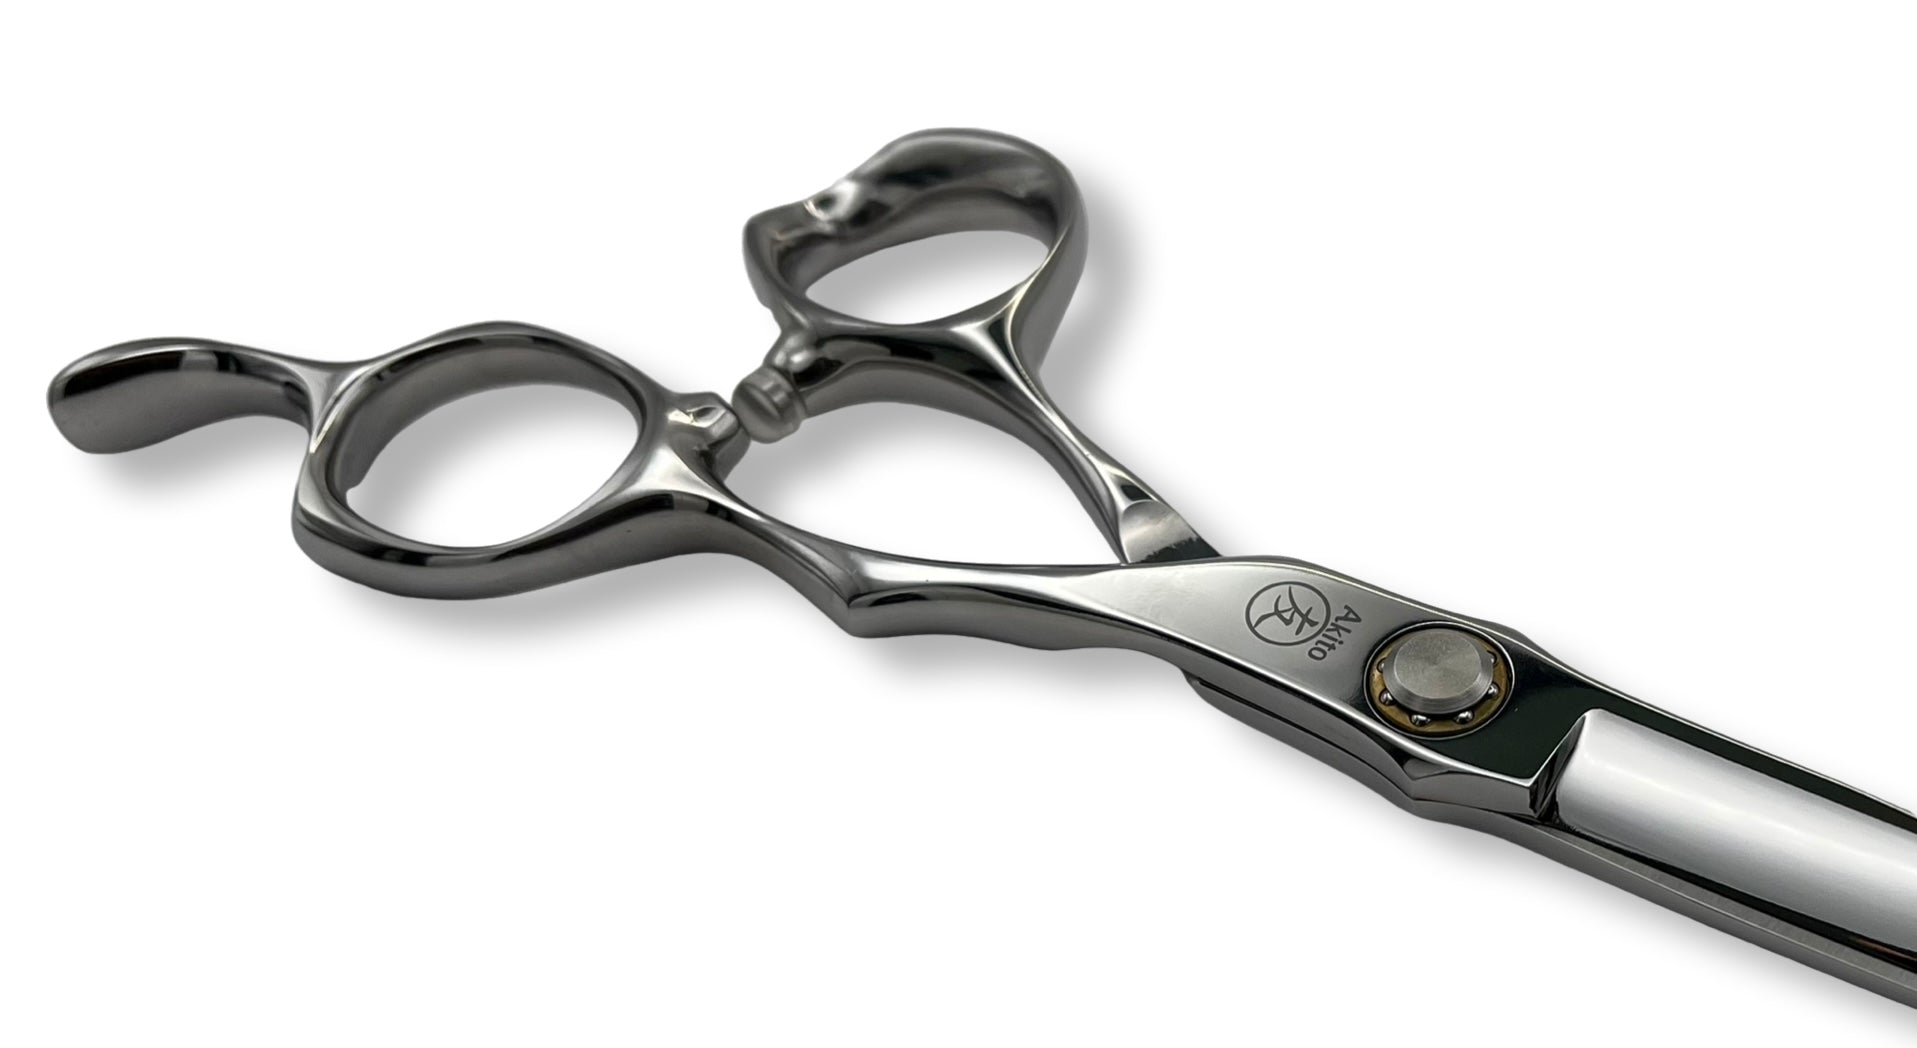 Kasai X offset hair cutting scissors